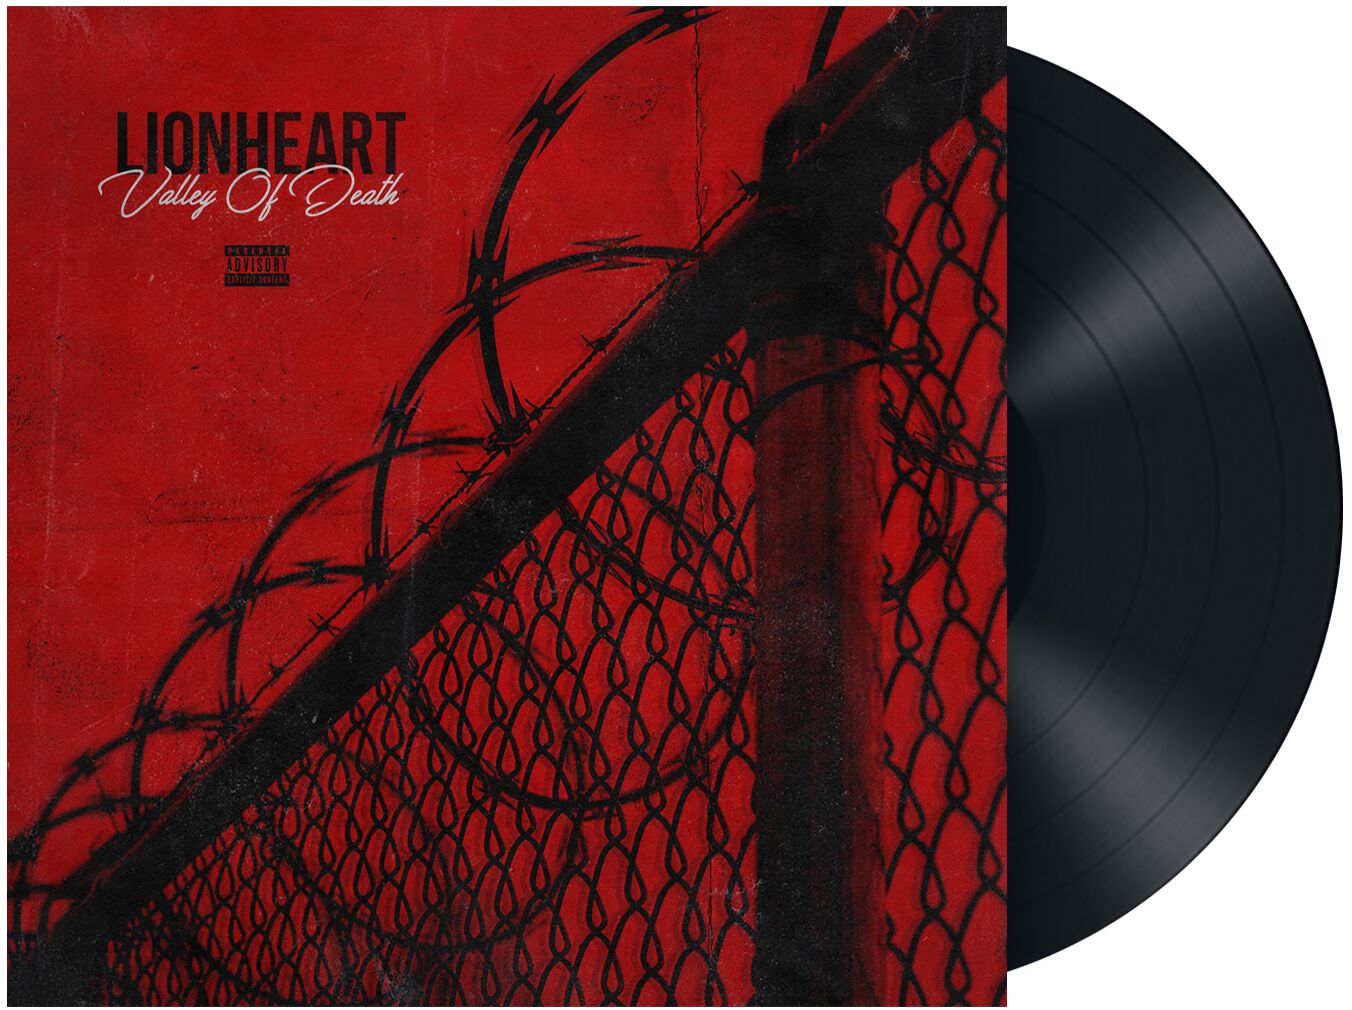 Valley of death von Lionheart - LP (Standard)